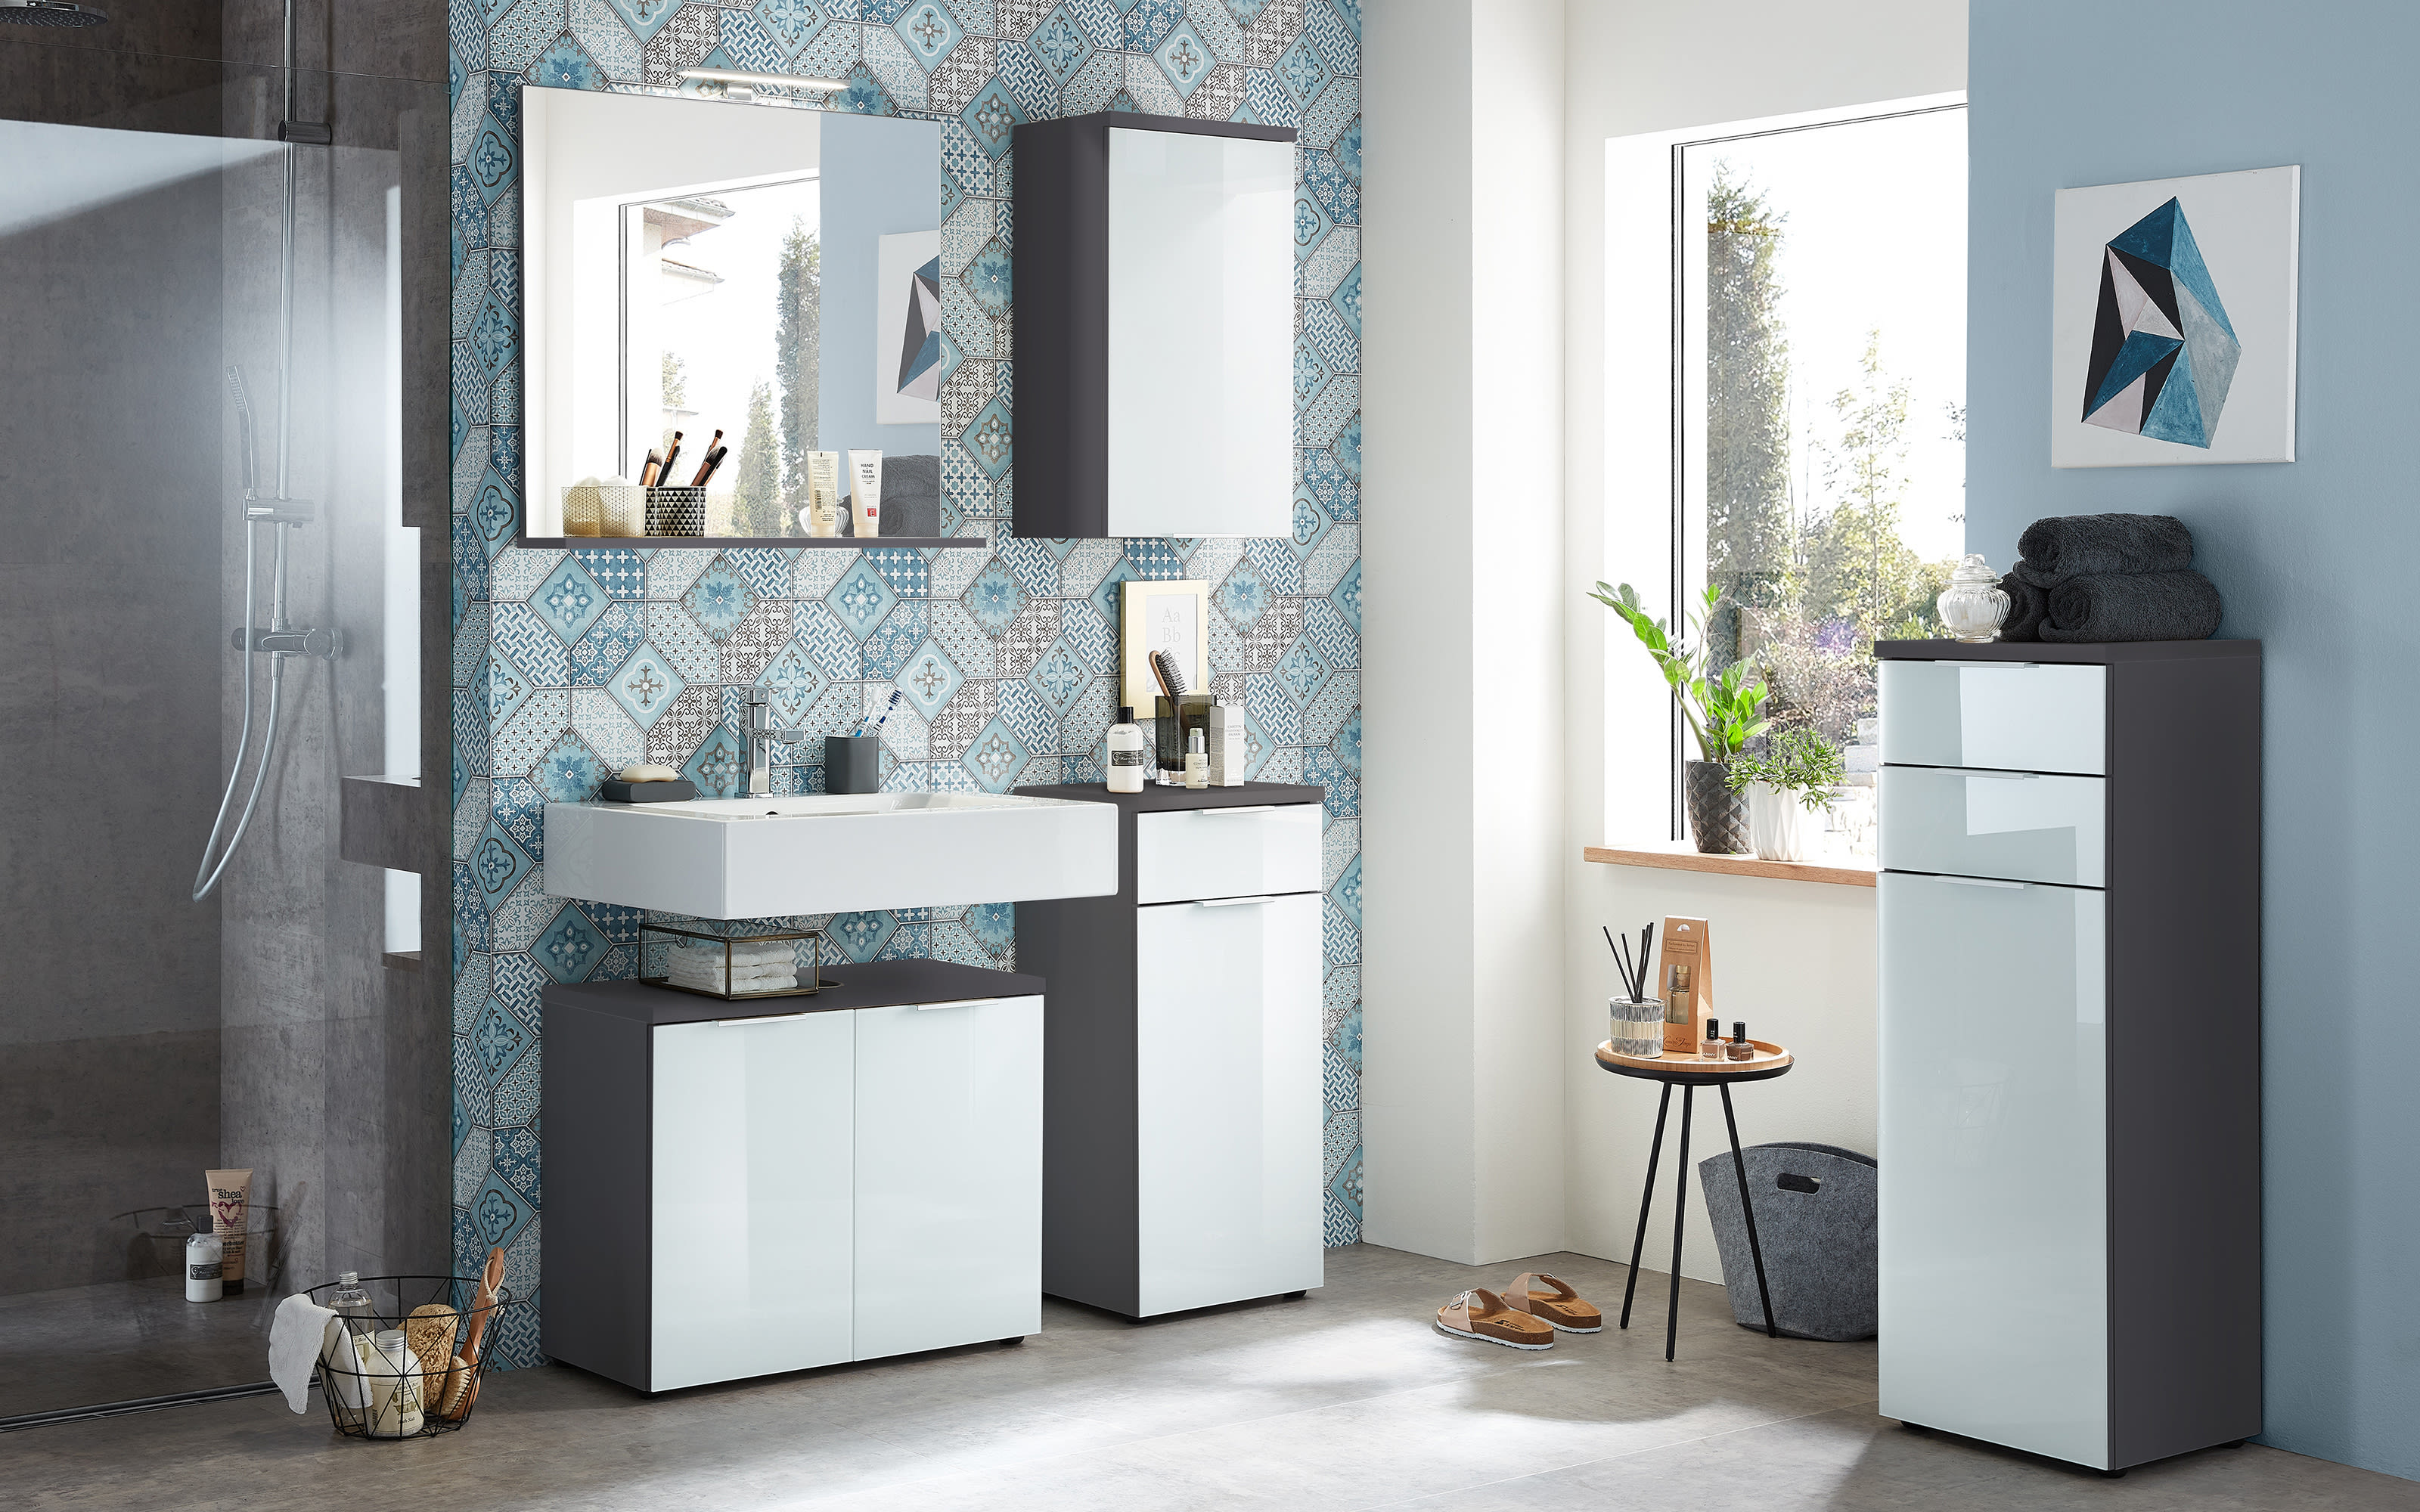 Hardeck kaufen bei Glas-graphit Pescara online Waschbeckenunterschrank weiß in